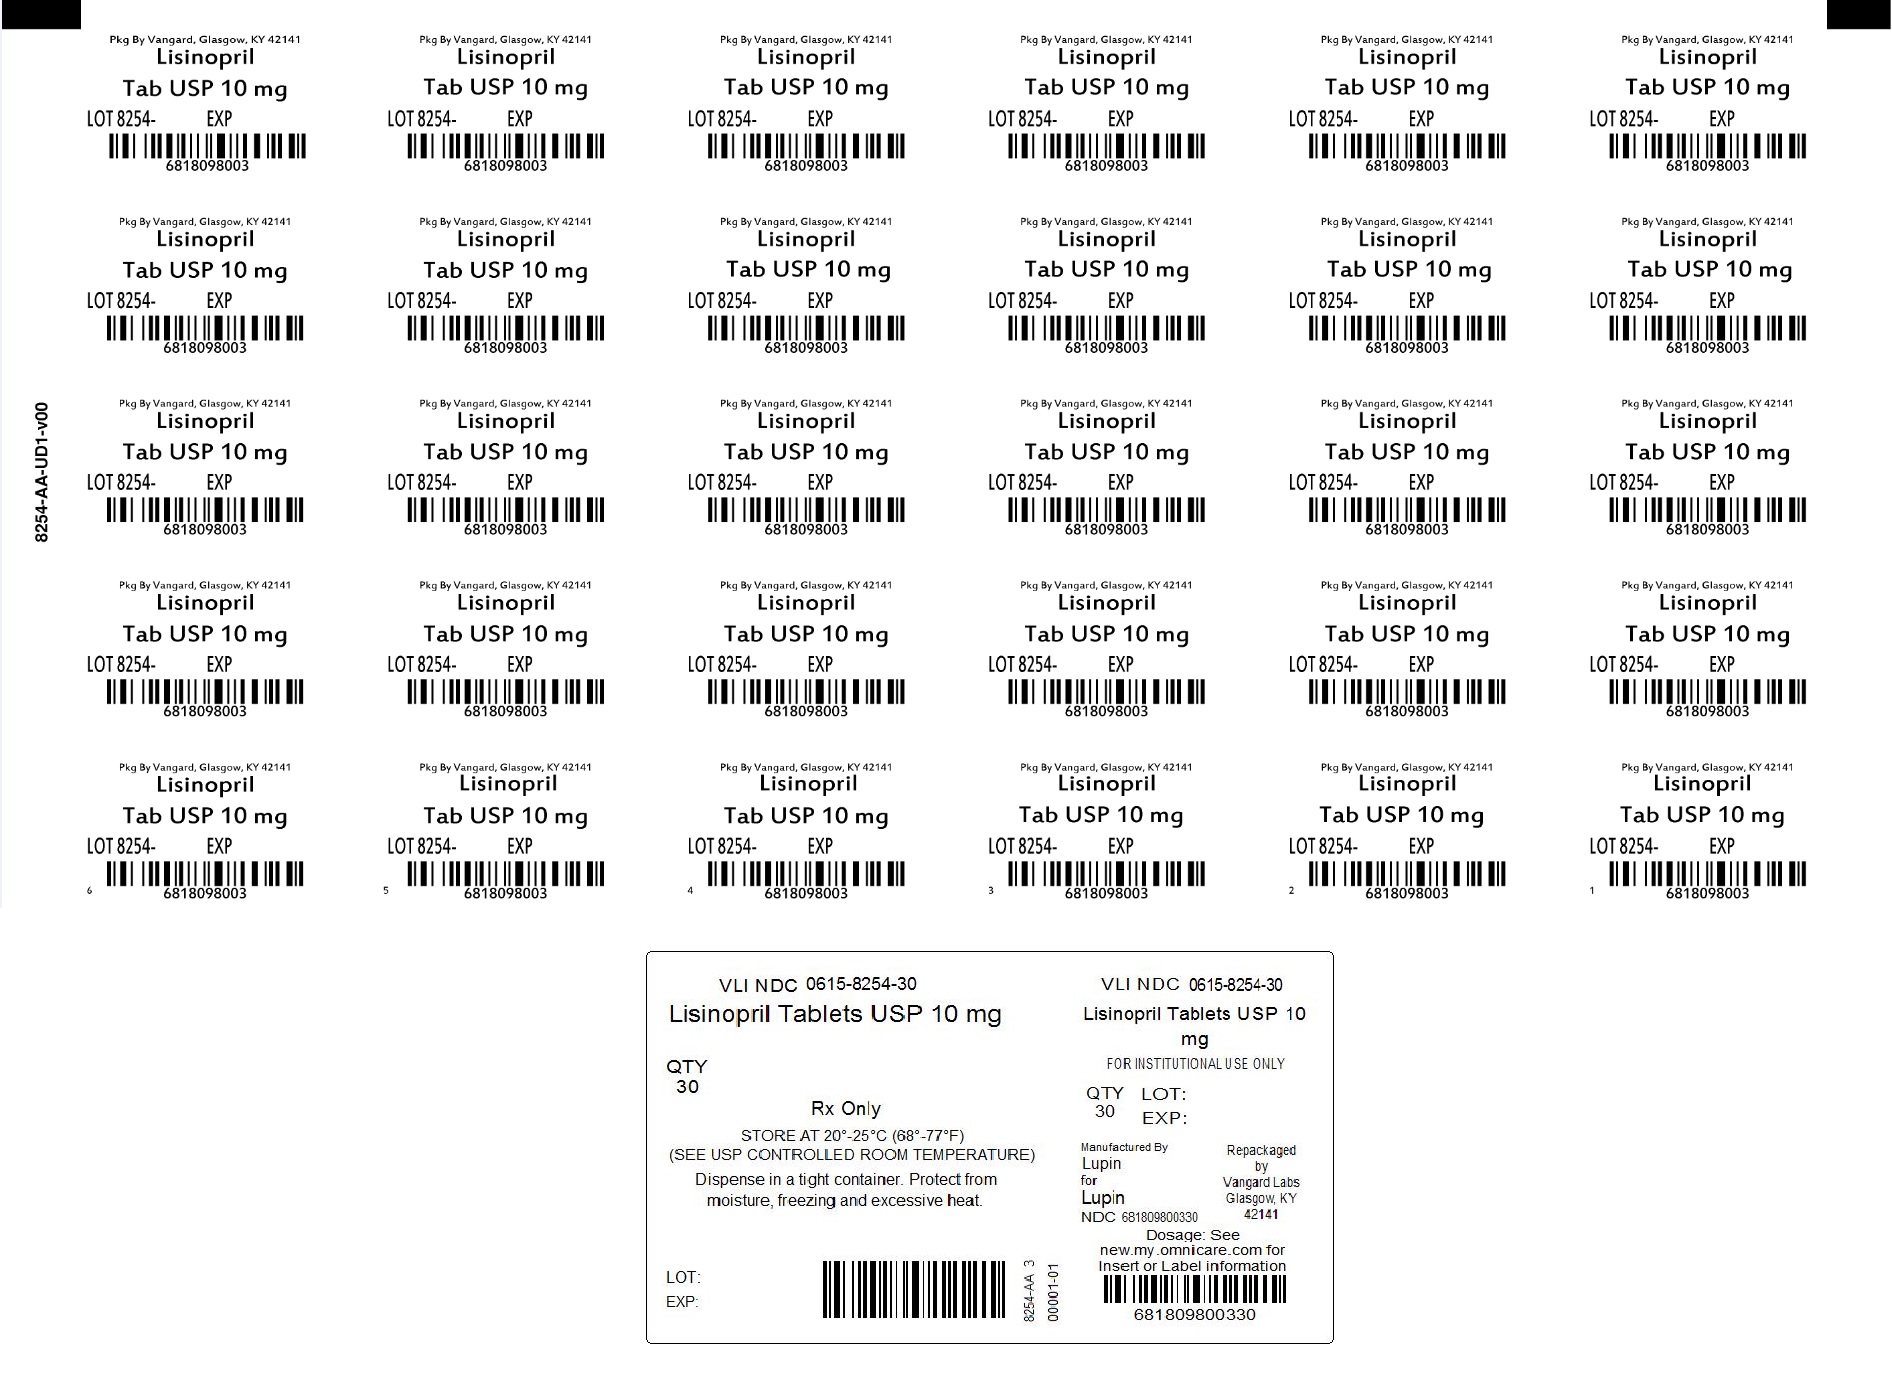 PRINCIPAL DISPLAY PANEL - Lisinopril 10MG bingo label